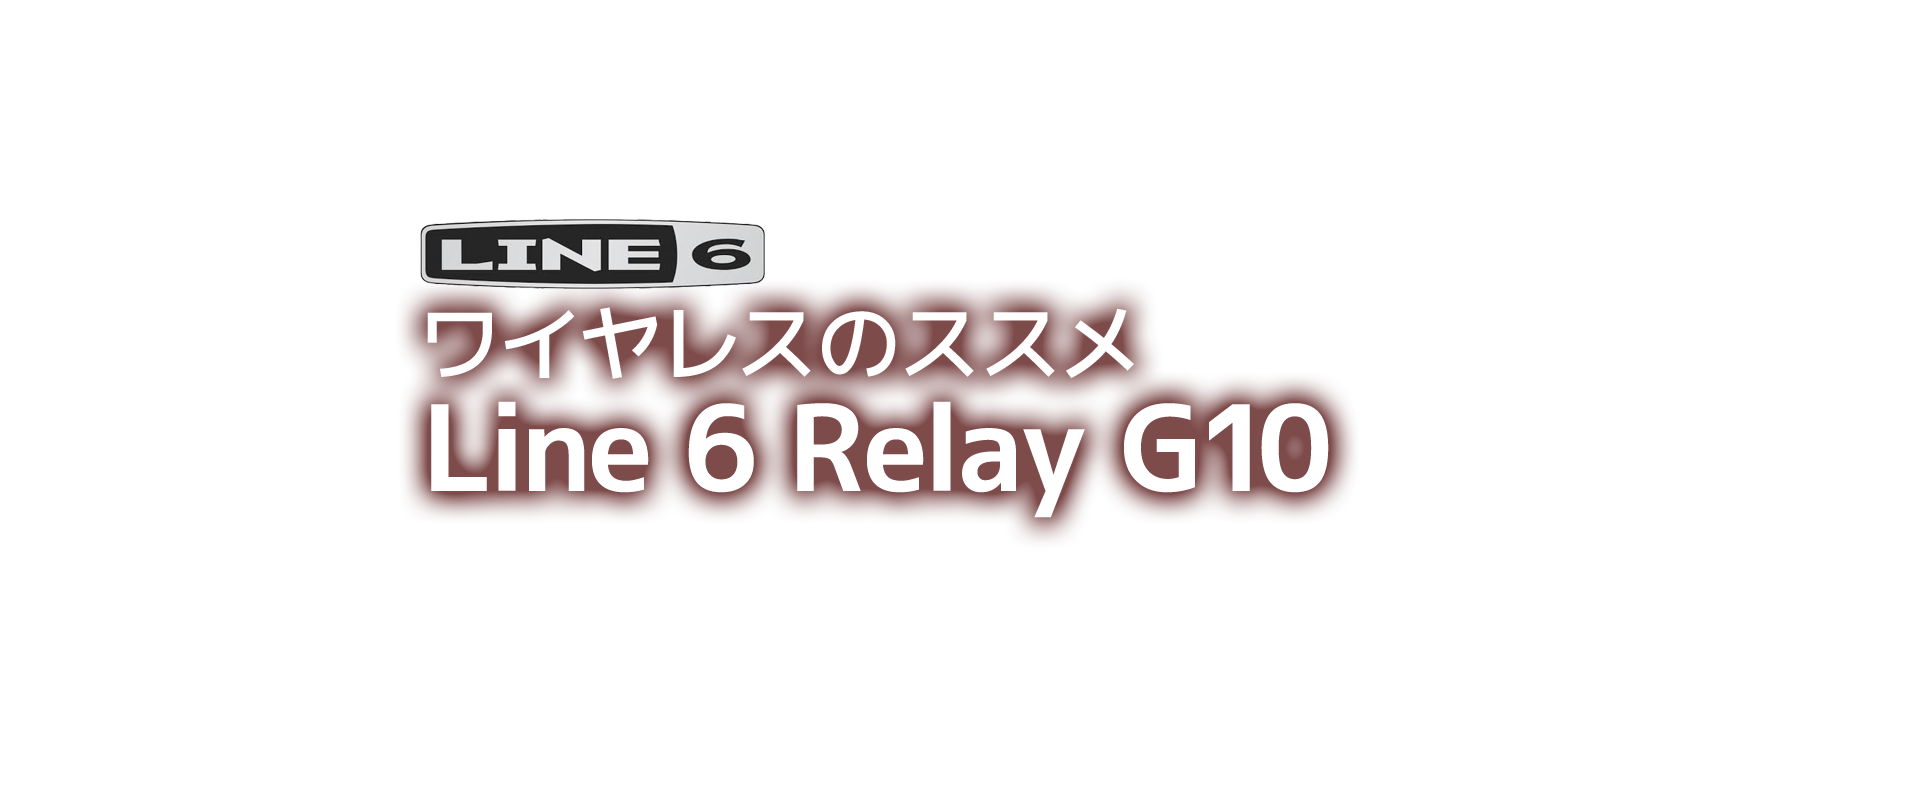 -ワイヤレスのススメ- Line 6 Relay G10